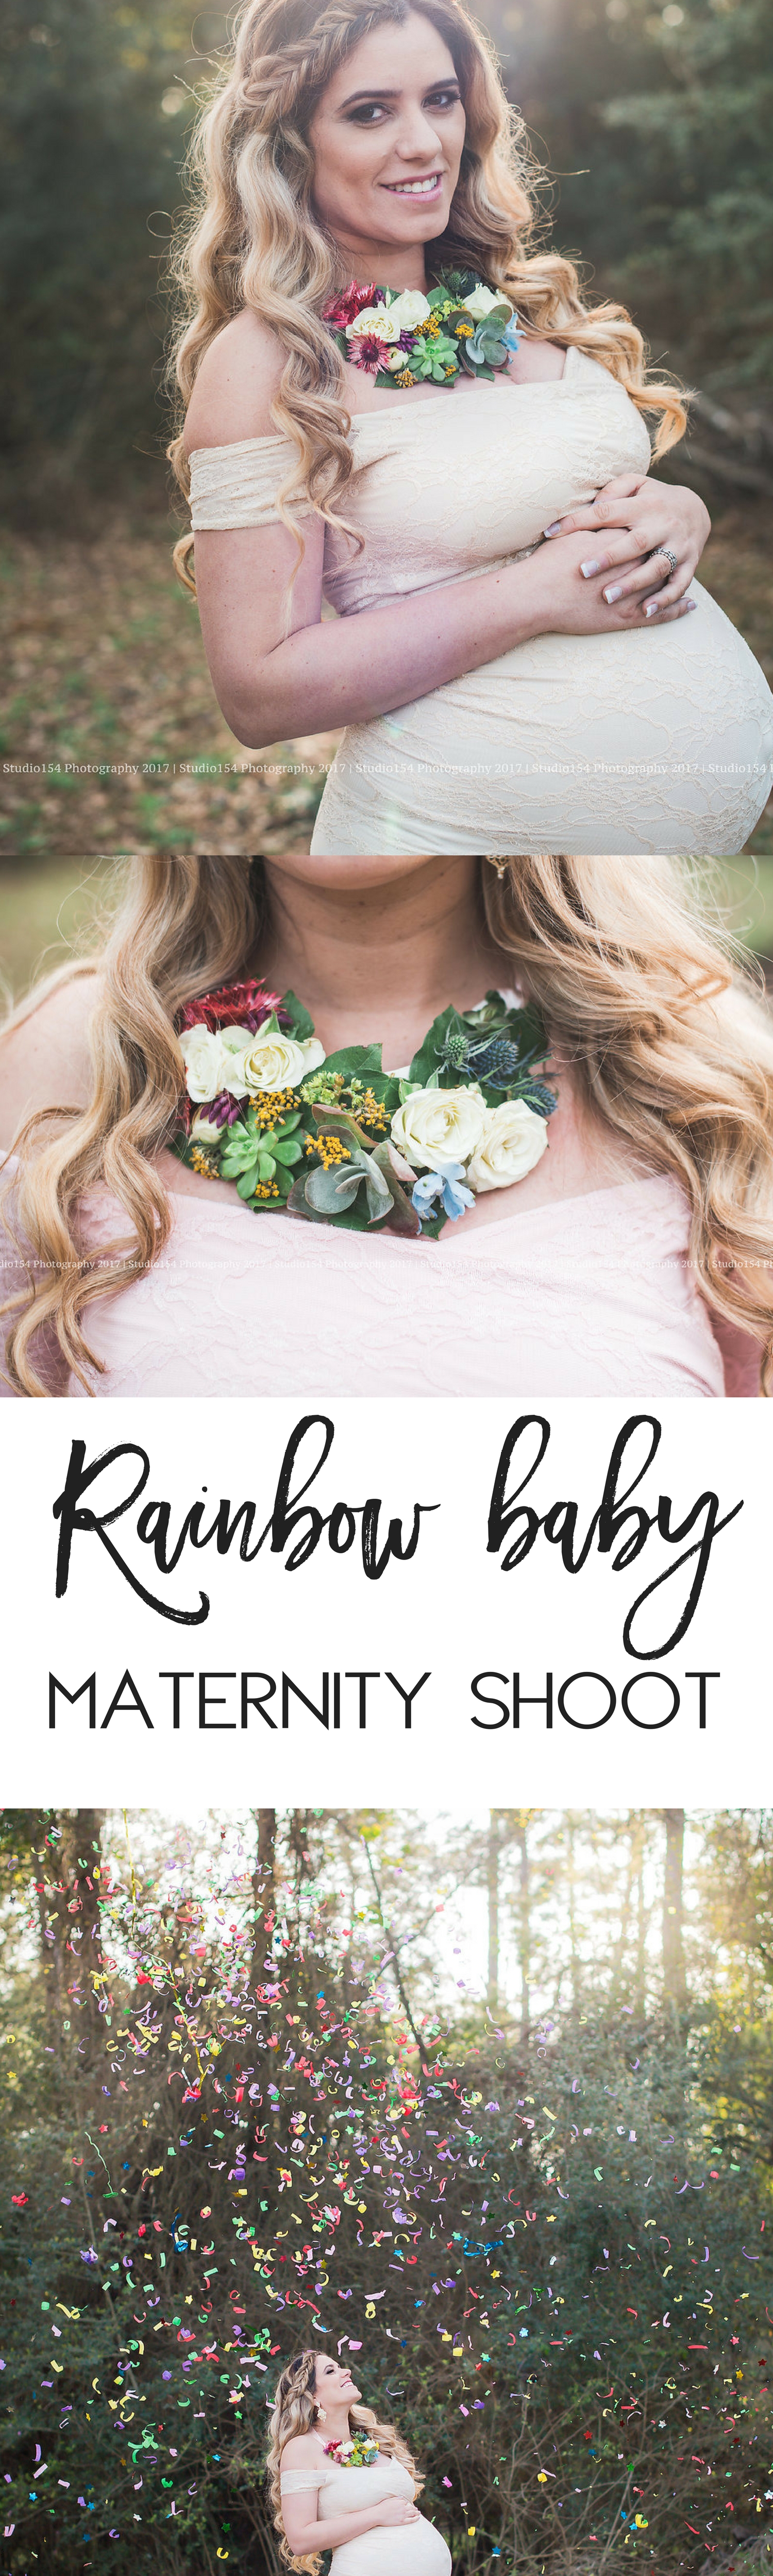 Rainbow baby maternity shoot